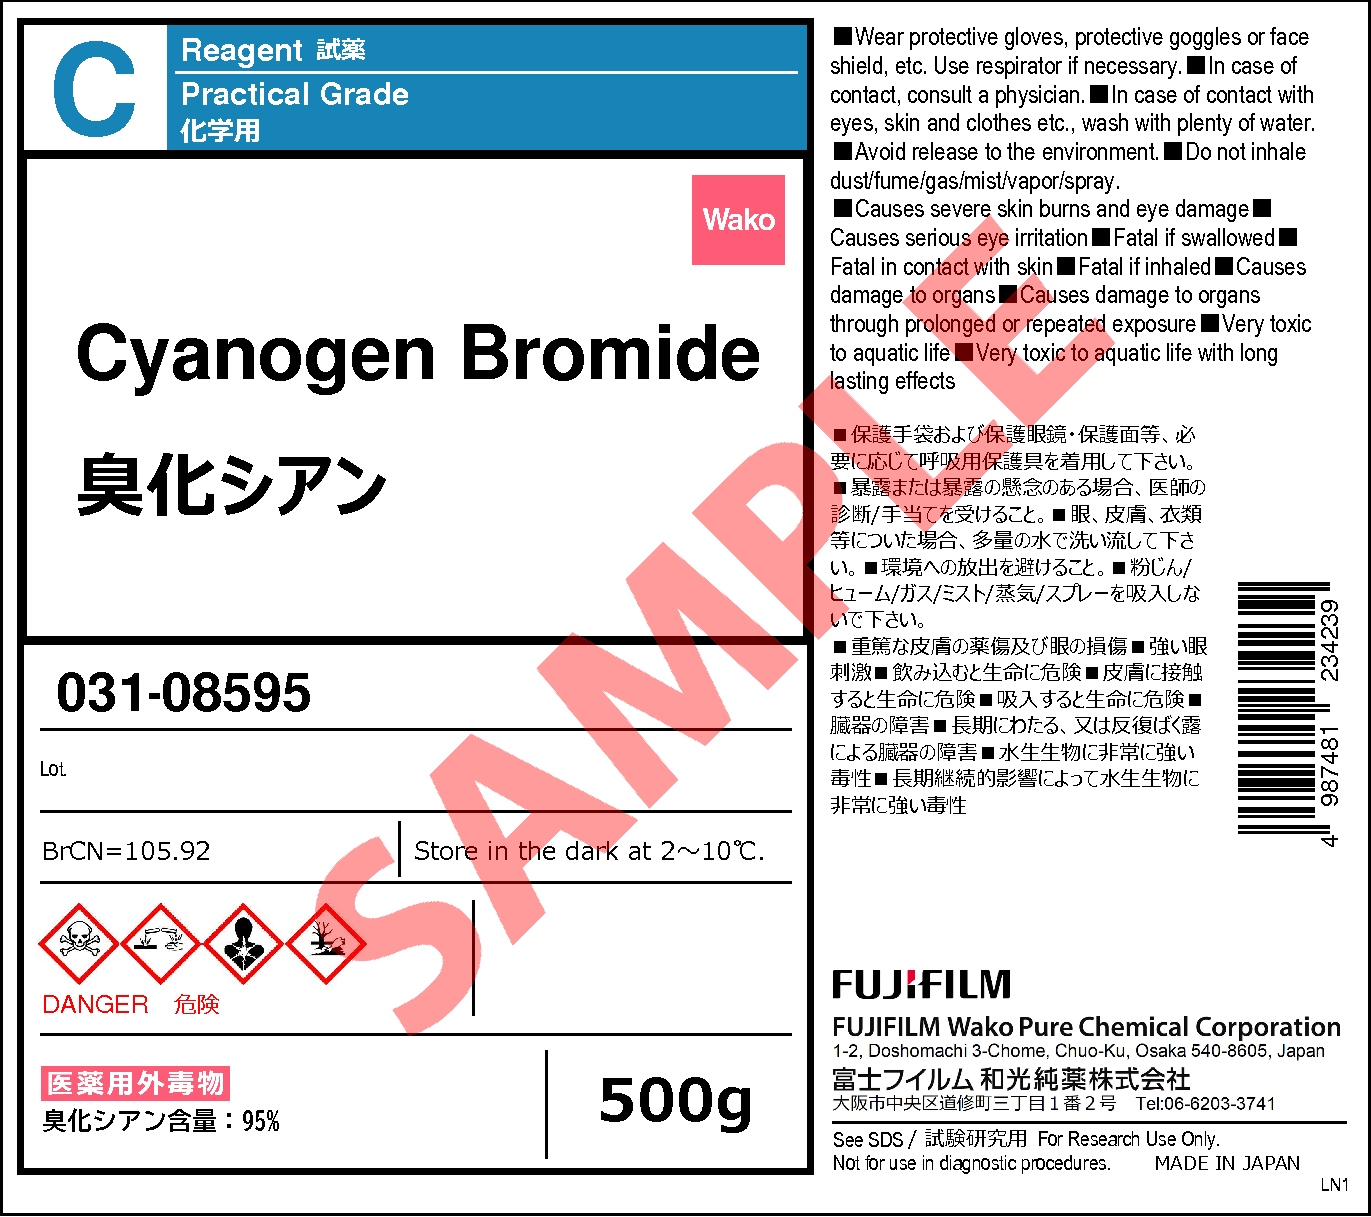 506-68-3・臭化シアン・Cyanogen Bromide・039-08591・037-08592・031 